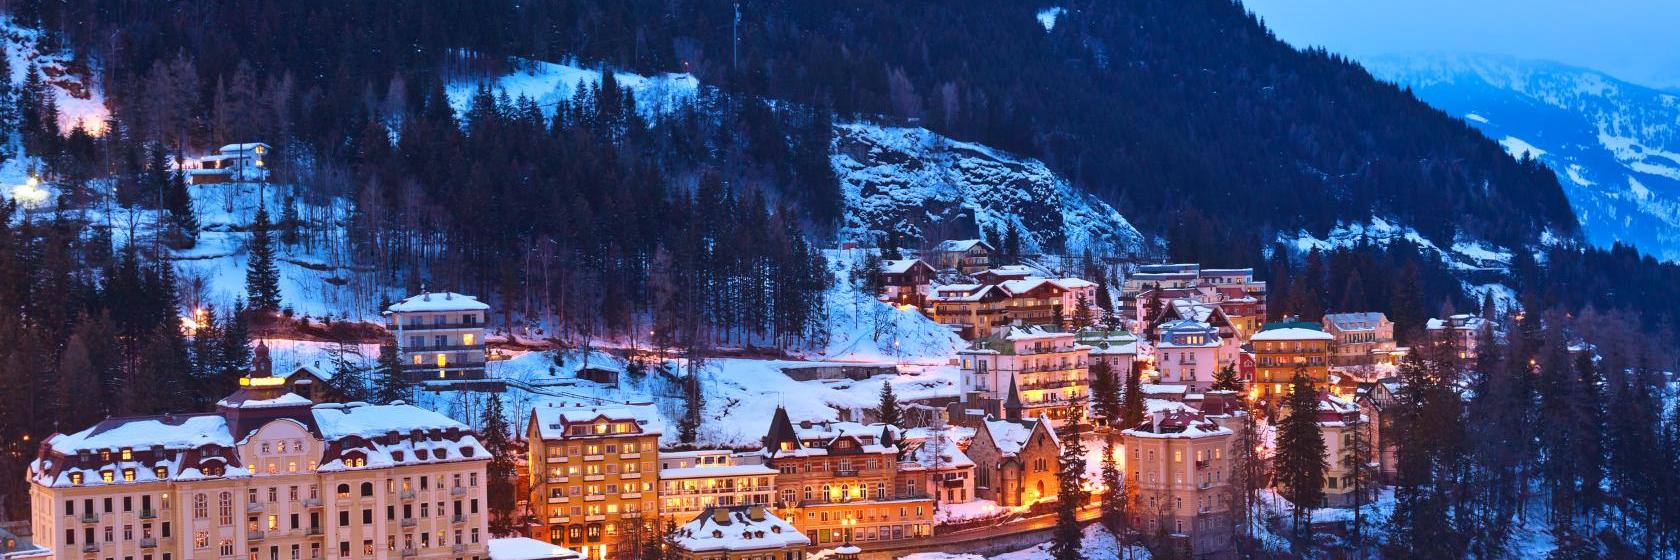 10 Best Bad Gastein Hotels, Austria (From $48)